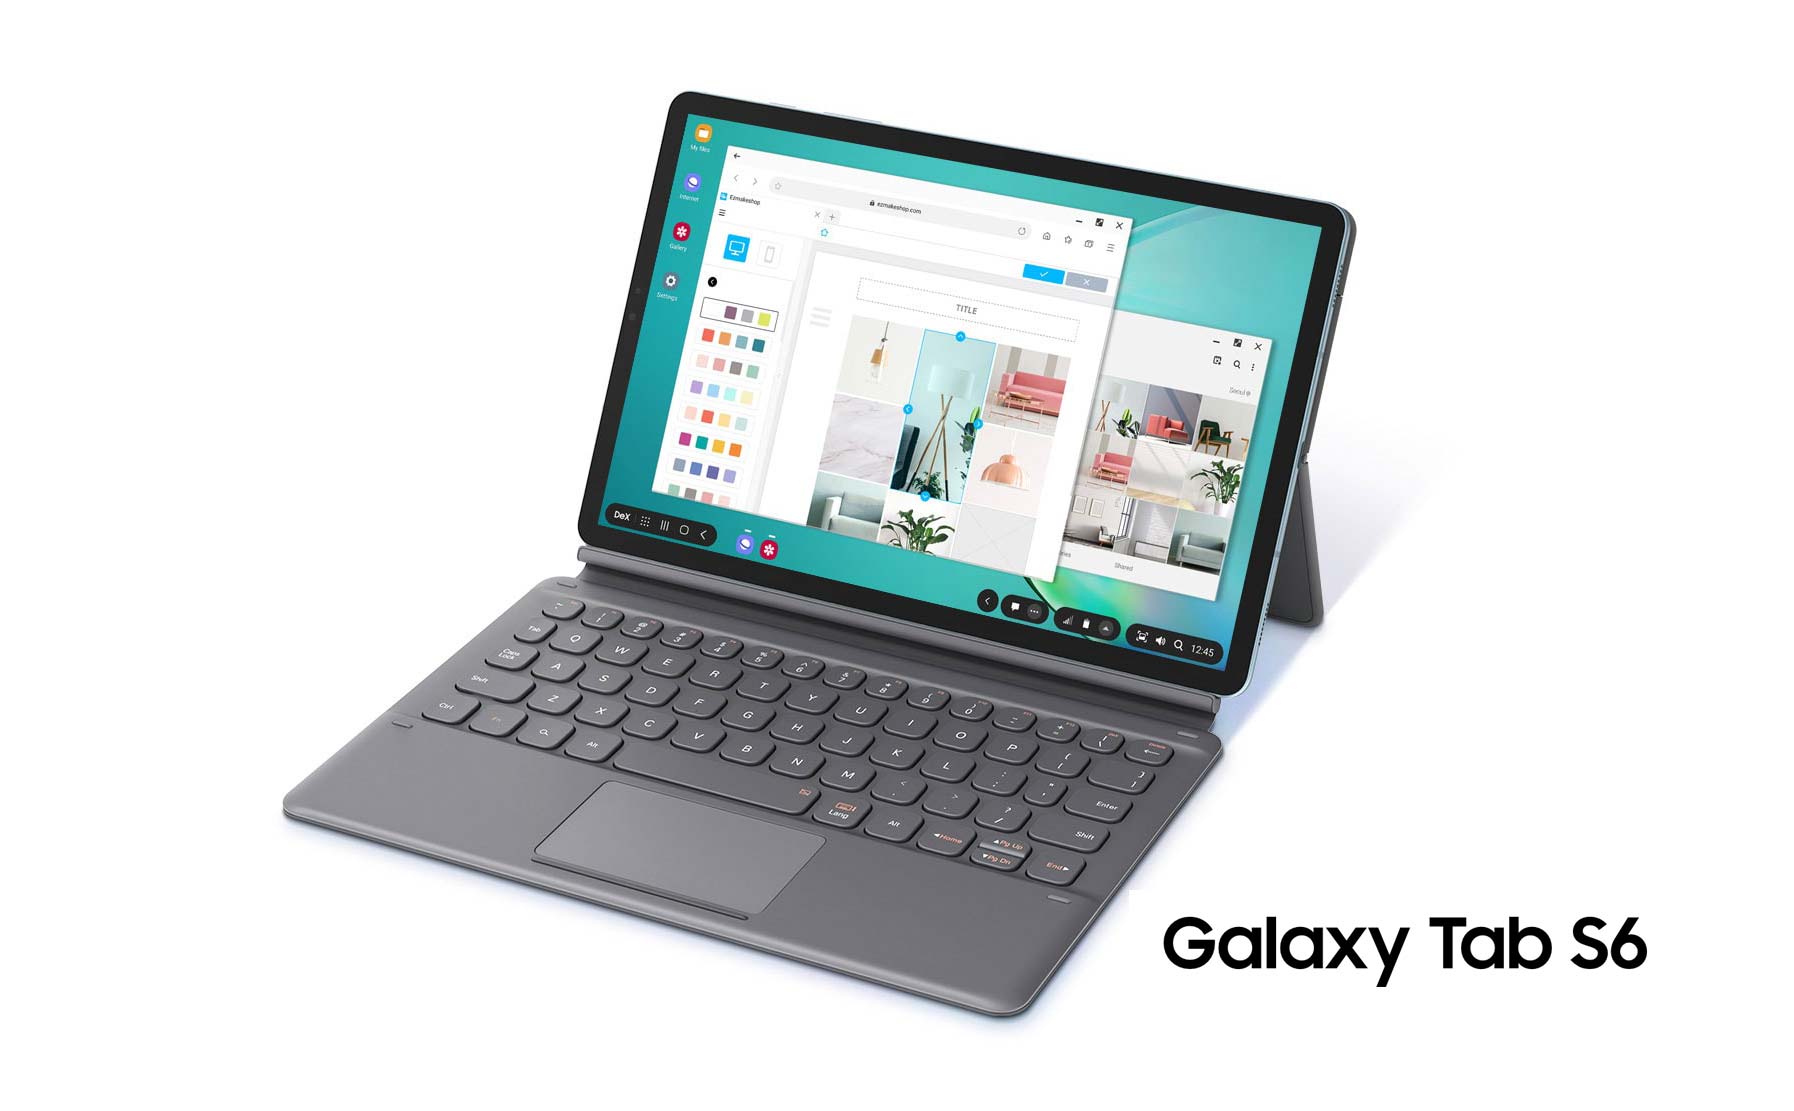 Samsung Galaxy Tab S6 chính thức: màn hình 10.5", Snapdragon 855, bút S Pen sạc trên thân máy